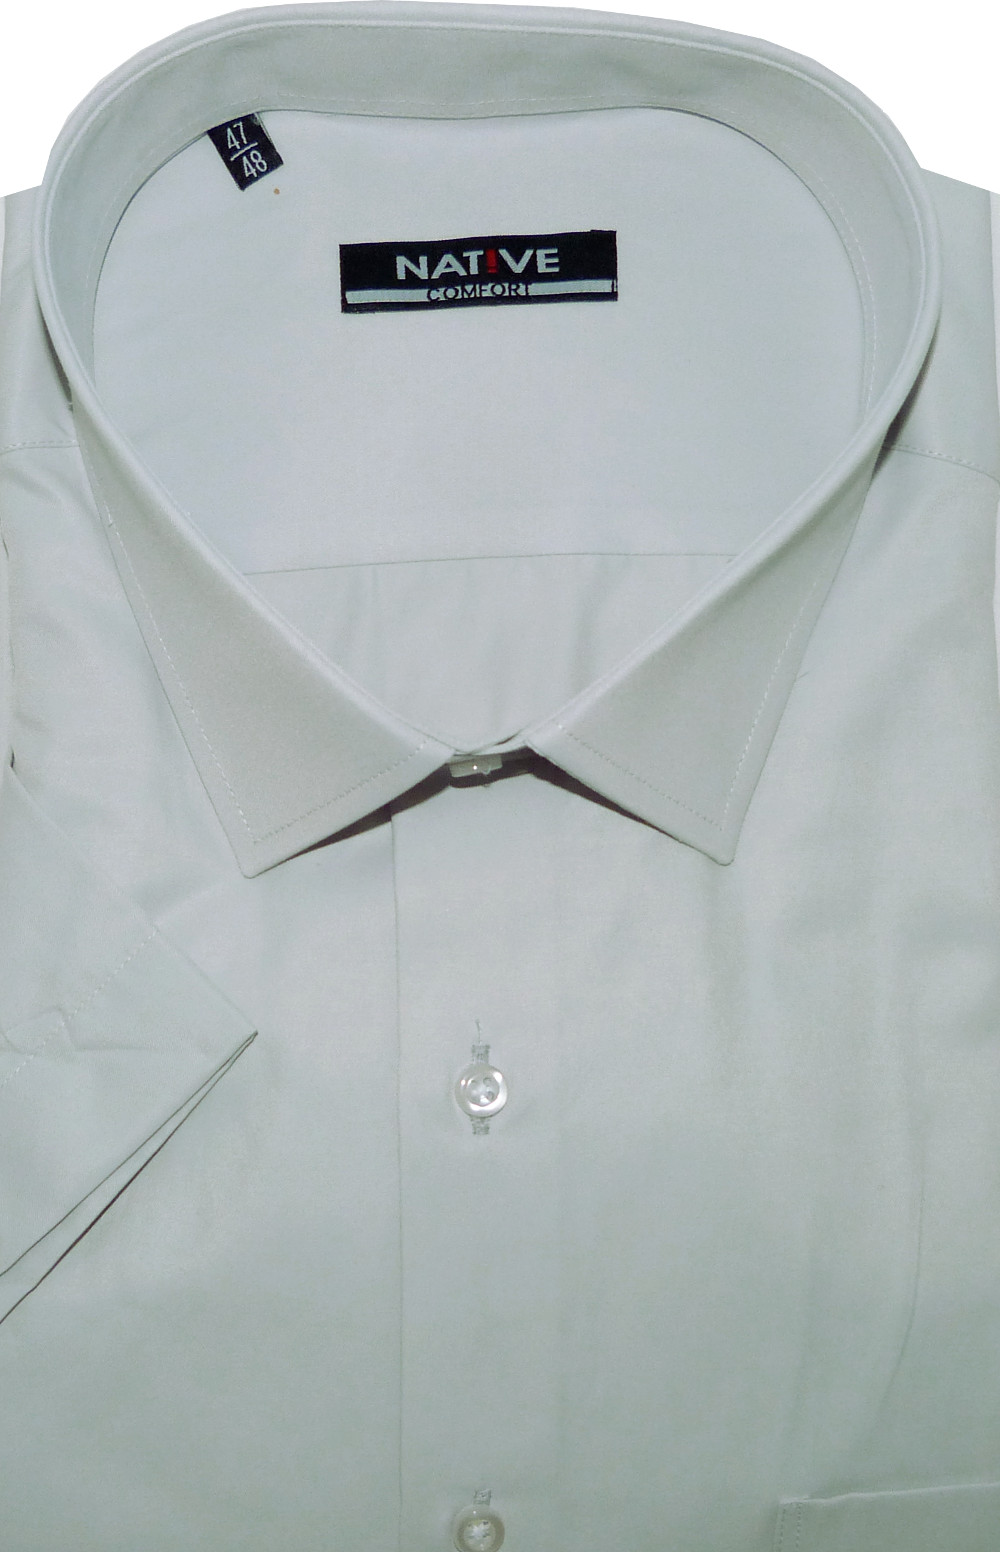 Nadměrná pánská košile (šedá) s krátkým rukávem, vel. 47/48 - Native N901/012